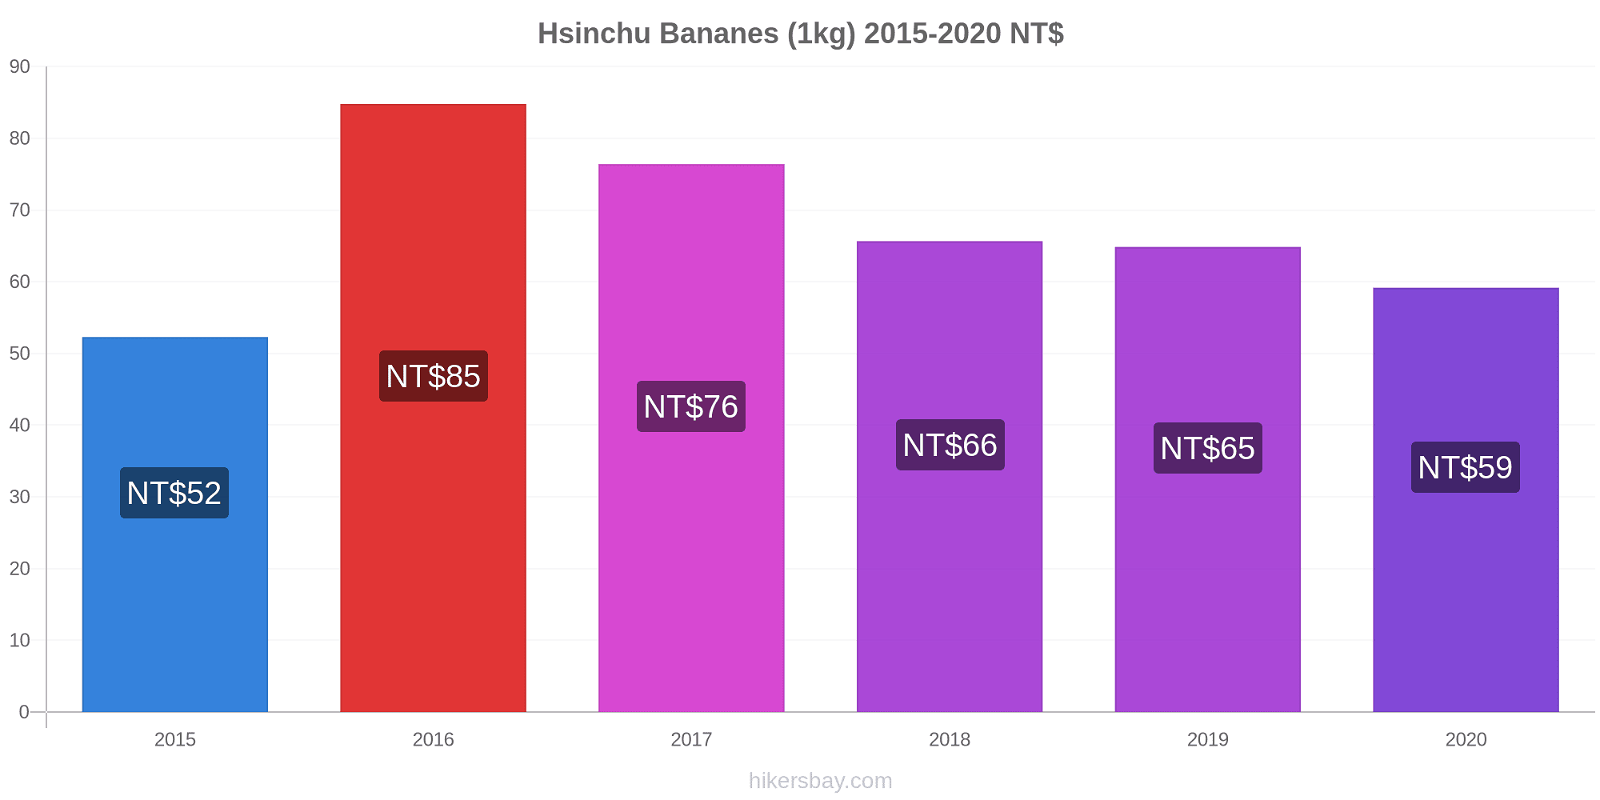 Hsinchu changements de prix Bananes (1kg) hikersbay.com